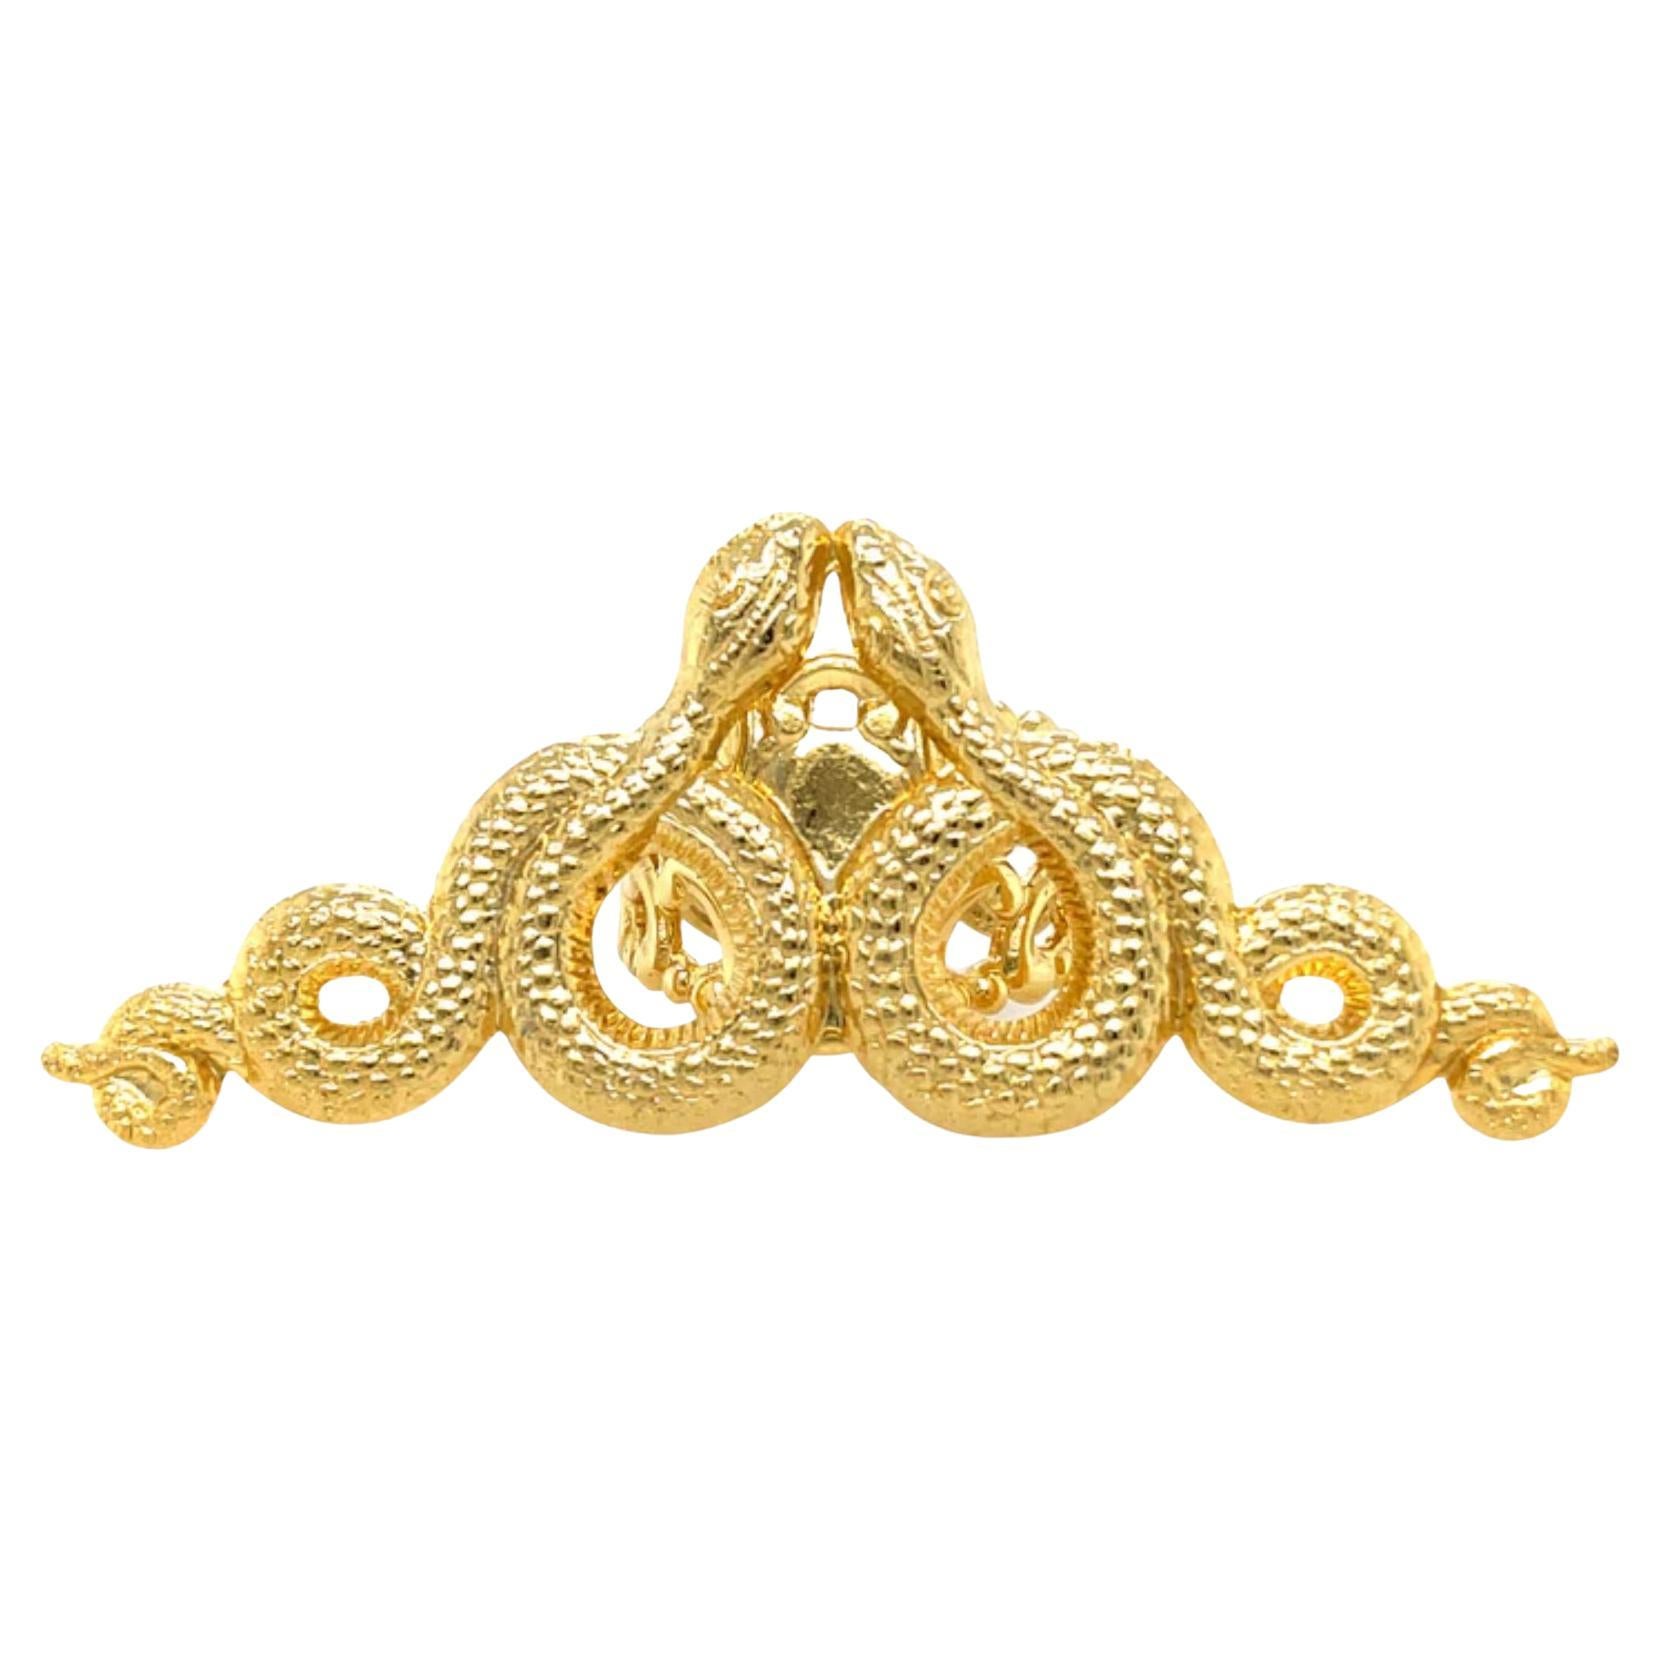 24K Gold Snake Ring with Snake Symbolism